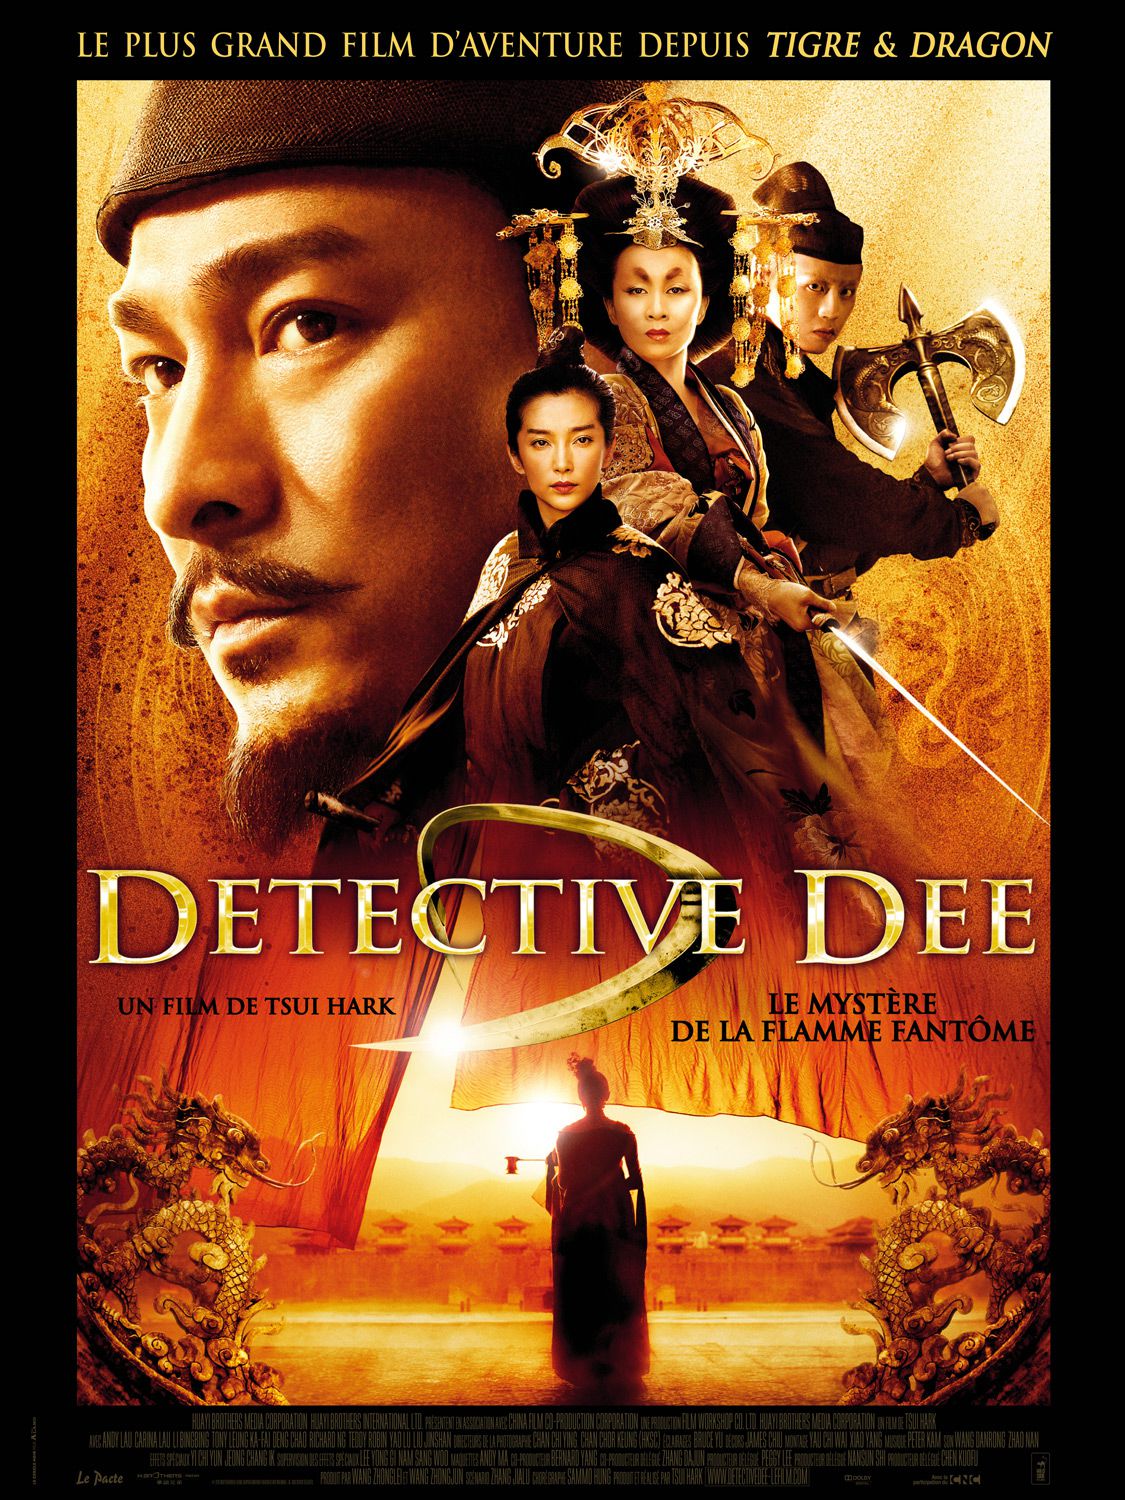 Địch Nhân Kiệt: Bí Ẩn Ngọn Lửa Ma – Detective Dee: The Mystery of the Phantom Flame (2010) Full HD Vietsub